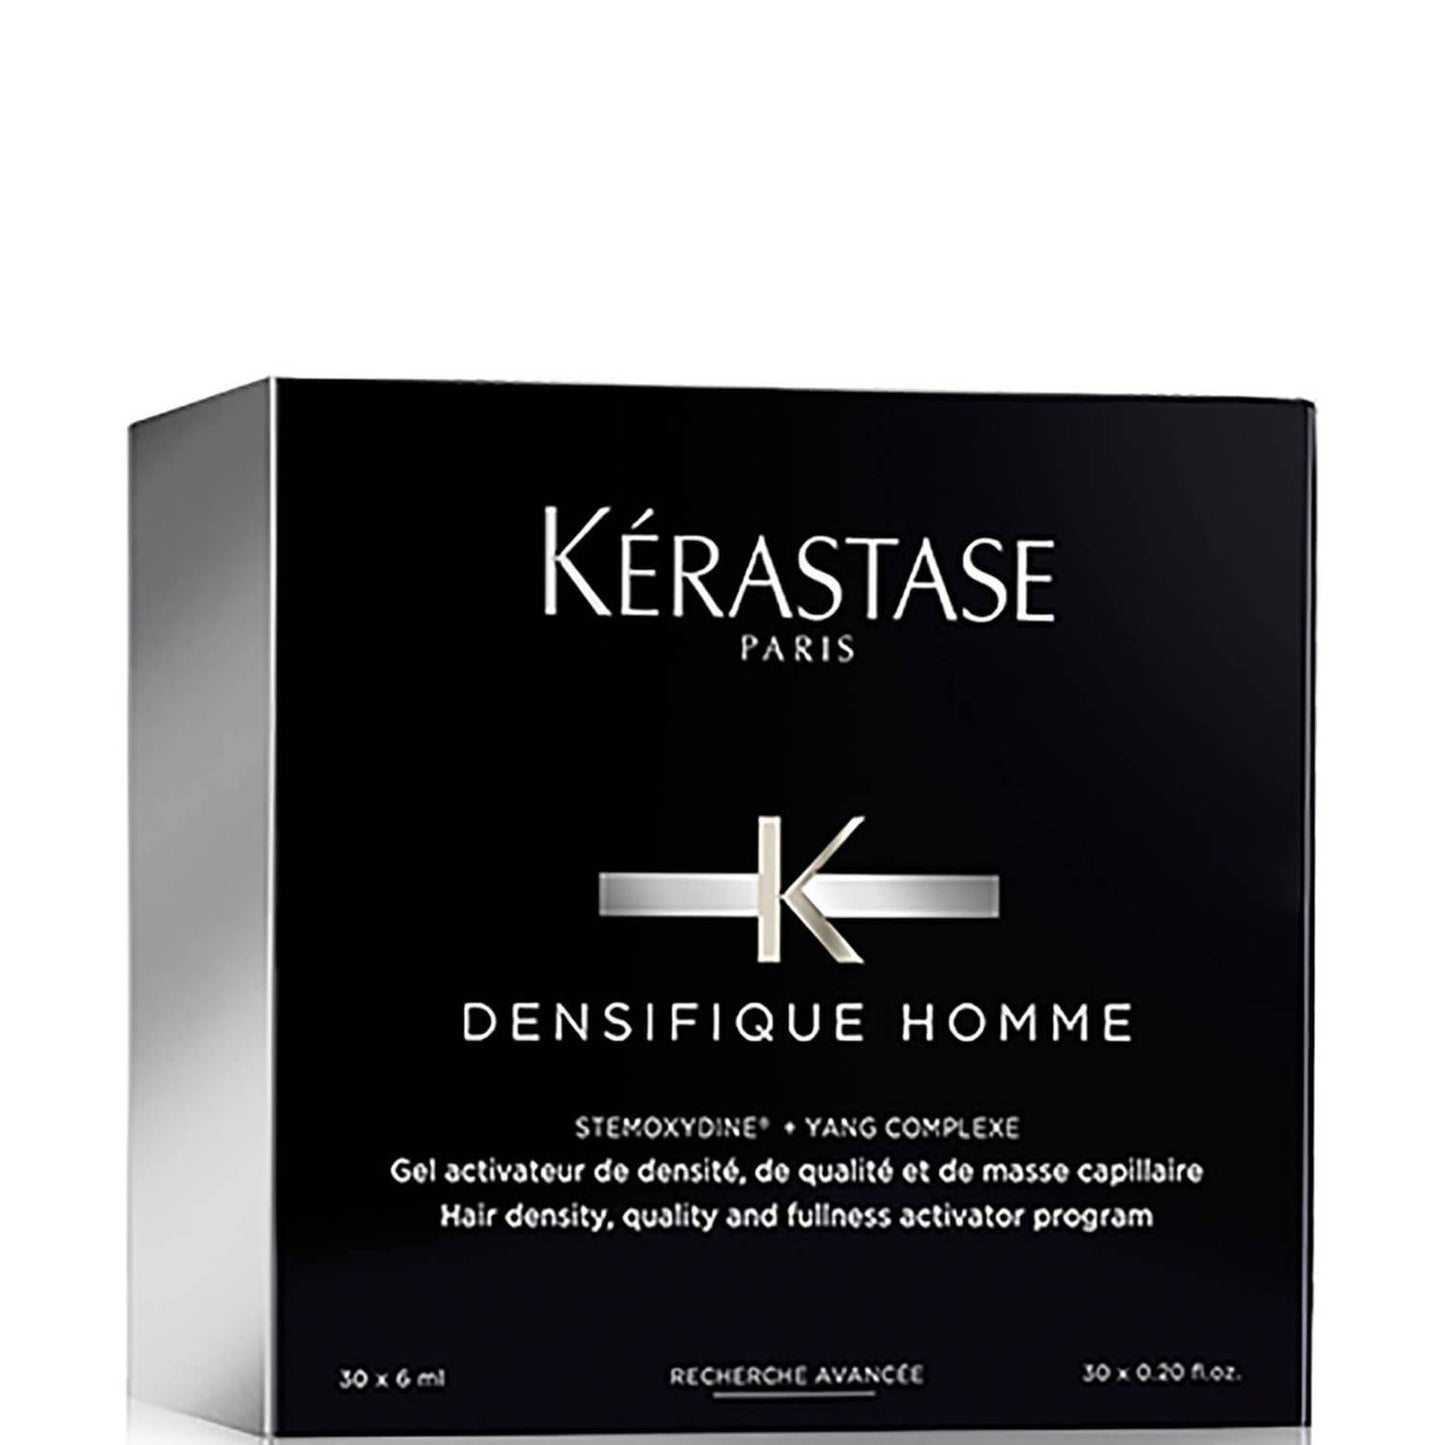 Tratament Kérastase - Densifique Homme Density and Fulness Programme 30*6ml